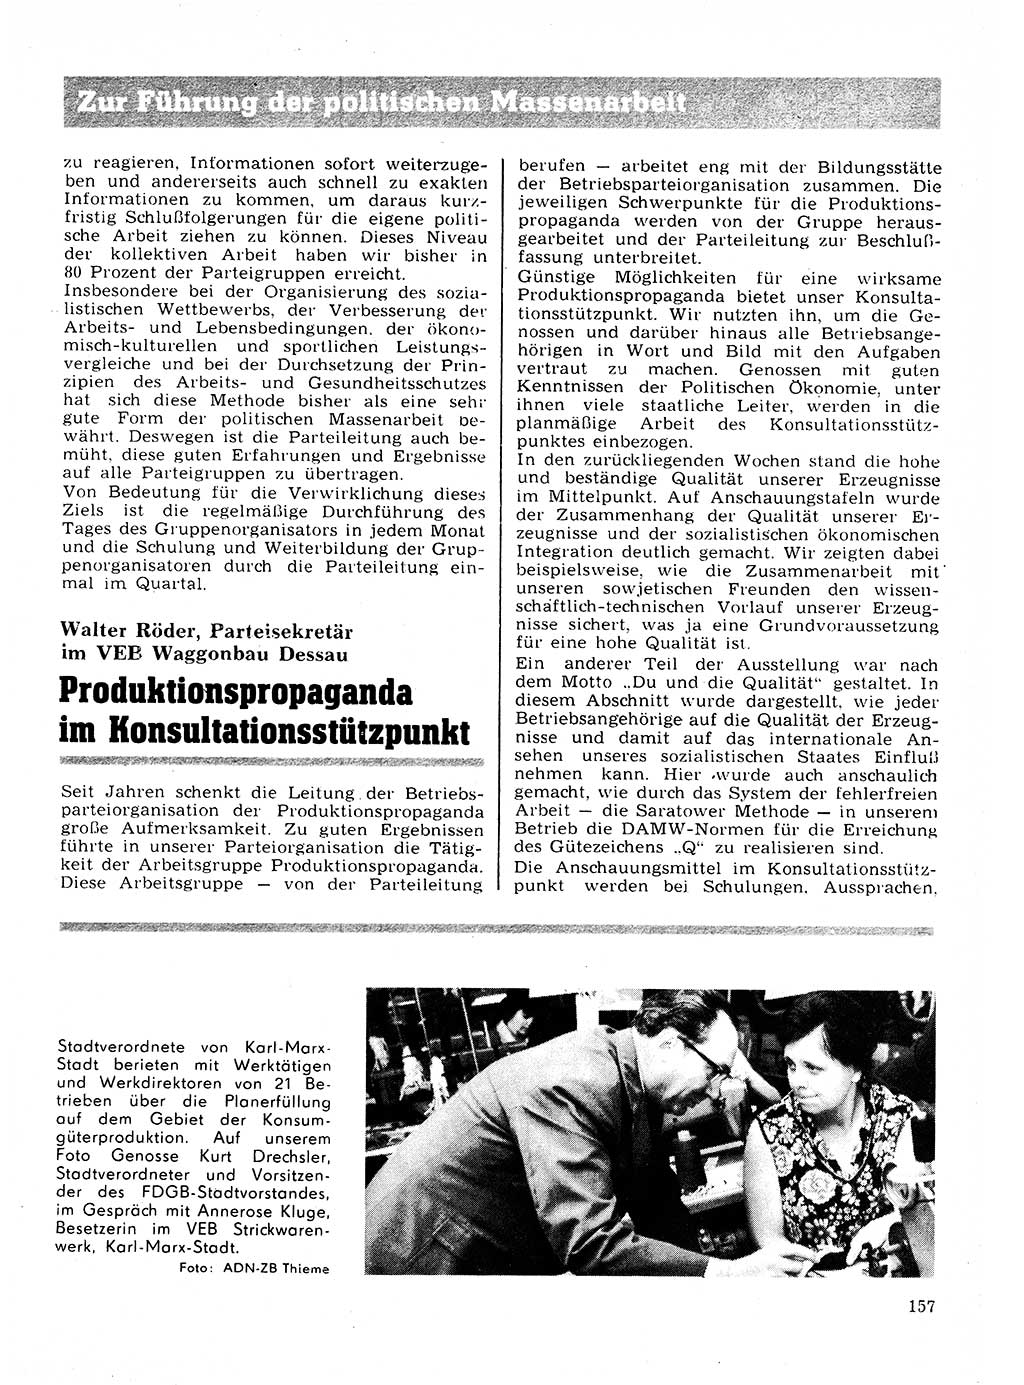 Neuer Weg (NW), Organ des Zentralkomitees (ZK) der SED (Sozialistische Einheitspartei Deutschlands) für Fragen des Parteilebens, 28. Jahrgang [Deutsche Demokratische Republik (DDR)] 1973, Seite 157 (NW ZK SED DDR 1973, S. 157)